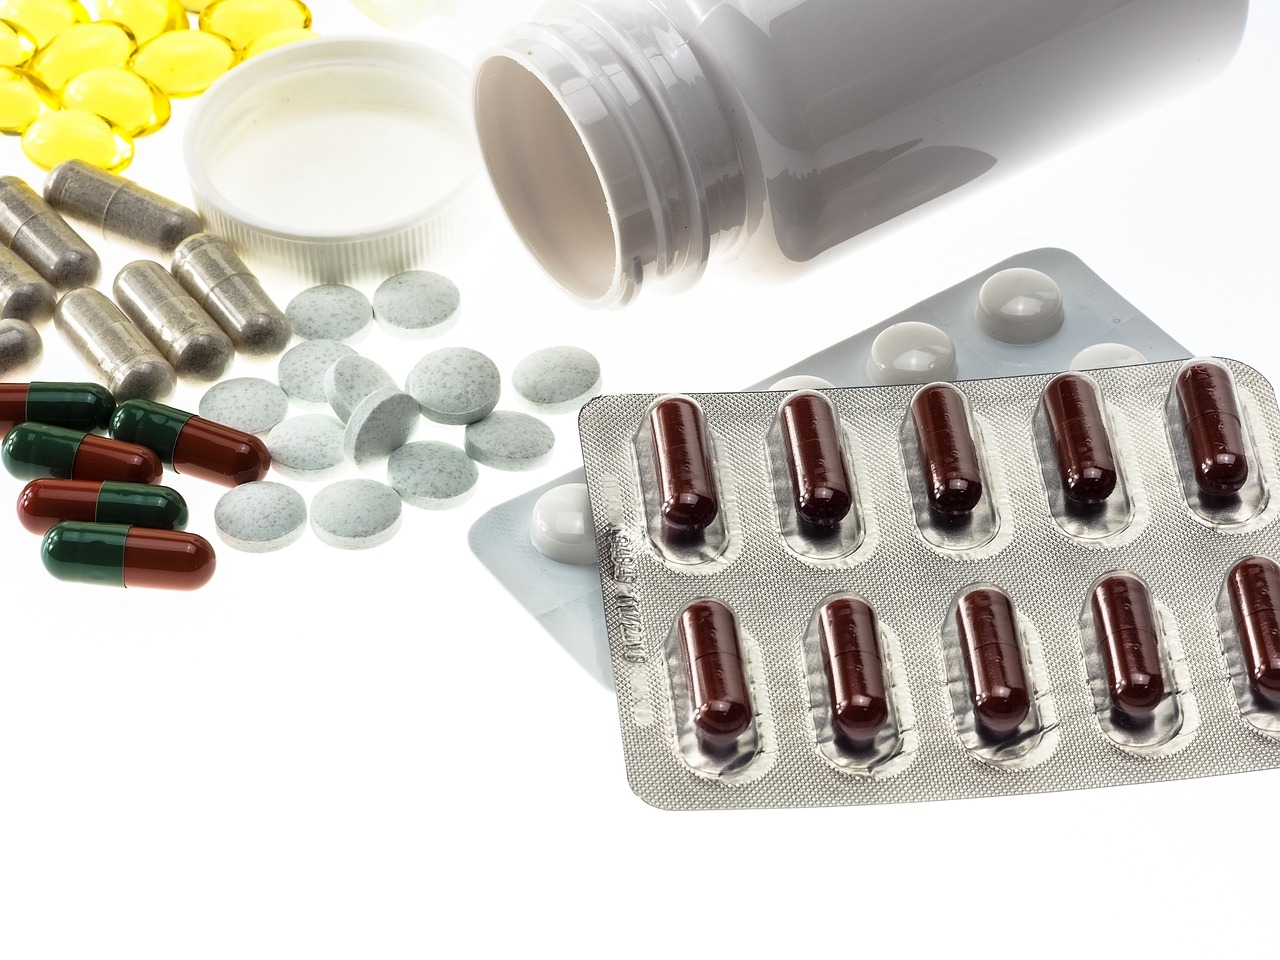 Tablete na recept za prostatitis